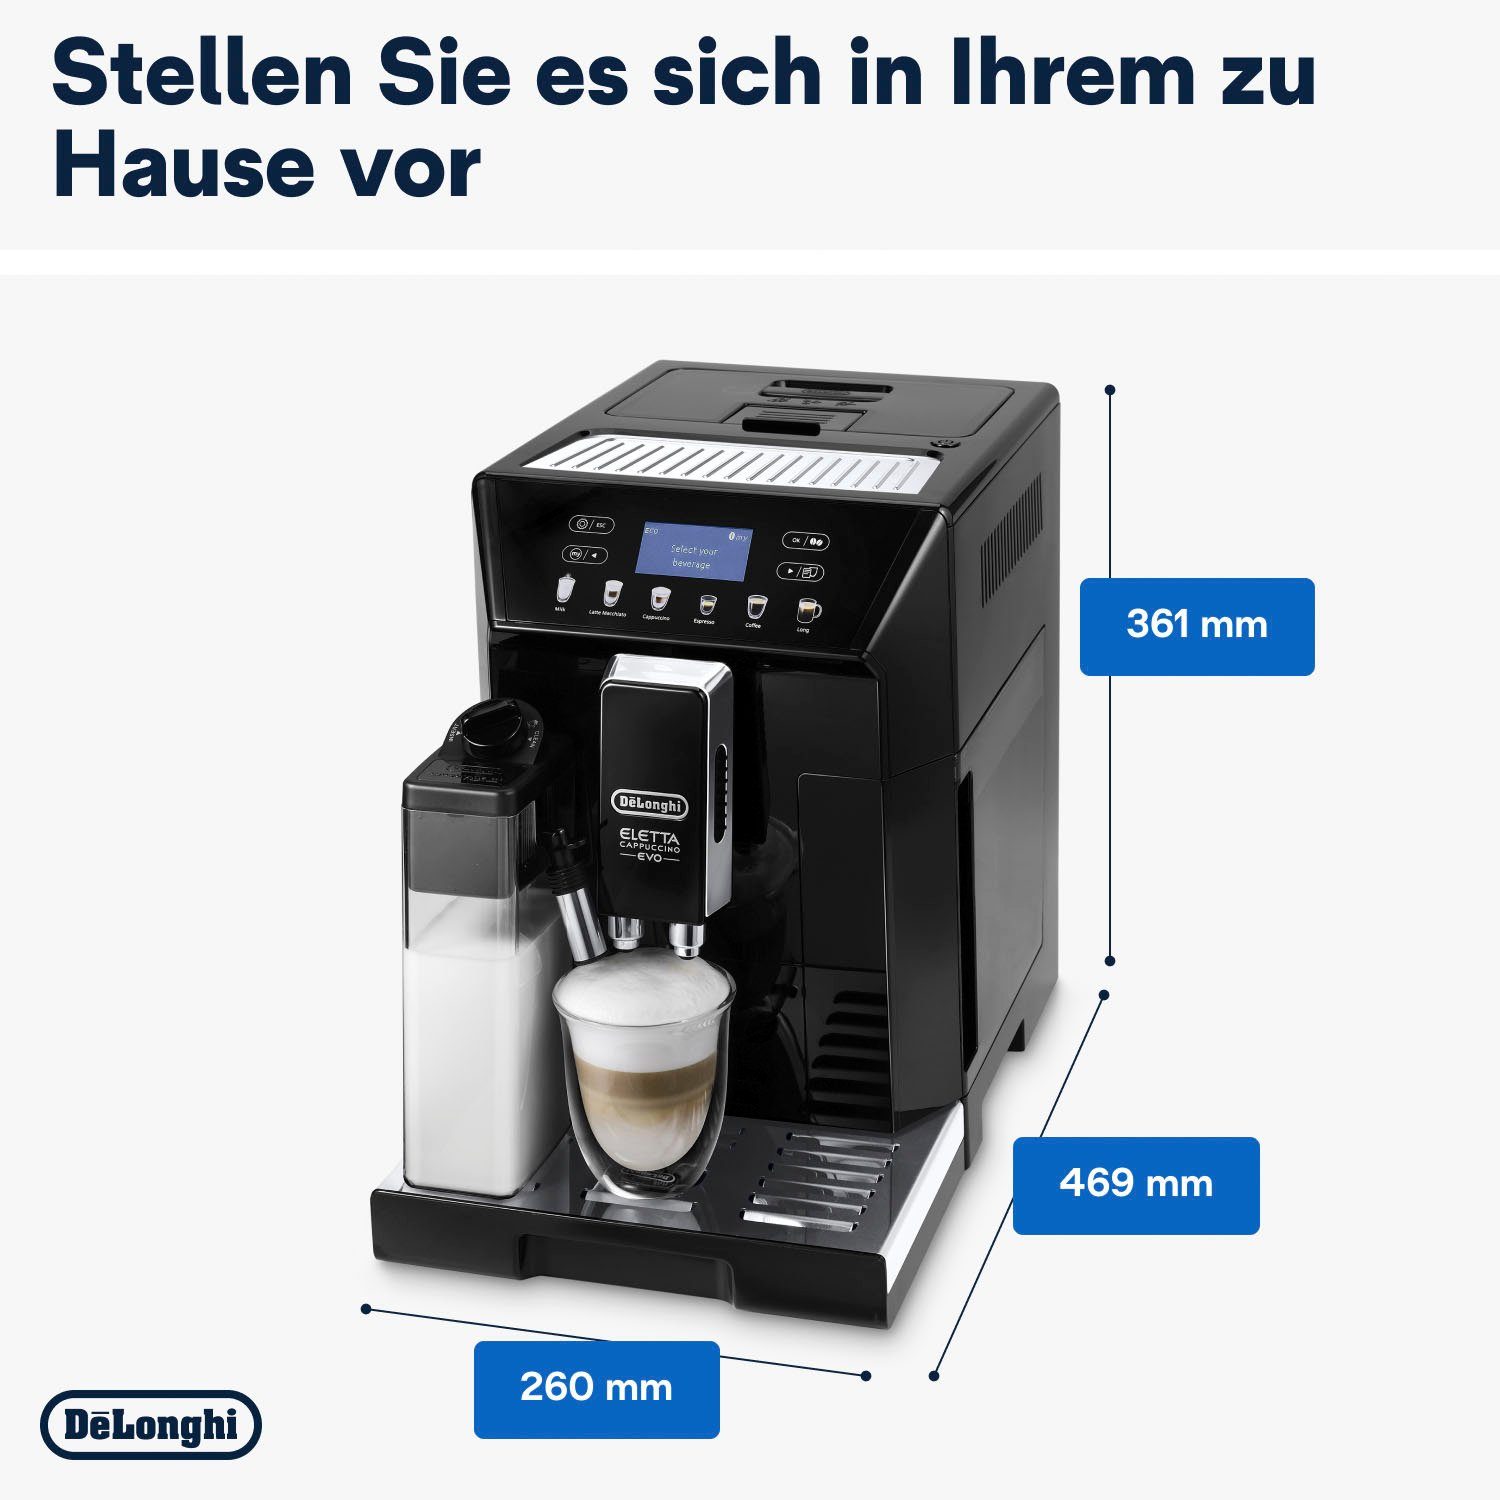 De'Longhi Kaffeevollautomat ECAM 46.860.B € Eletta UVP Pflegeset im schwarz, Wert inkl. Evo, von 31,99